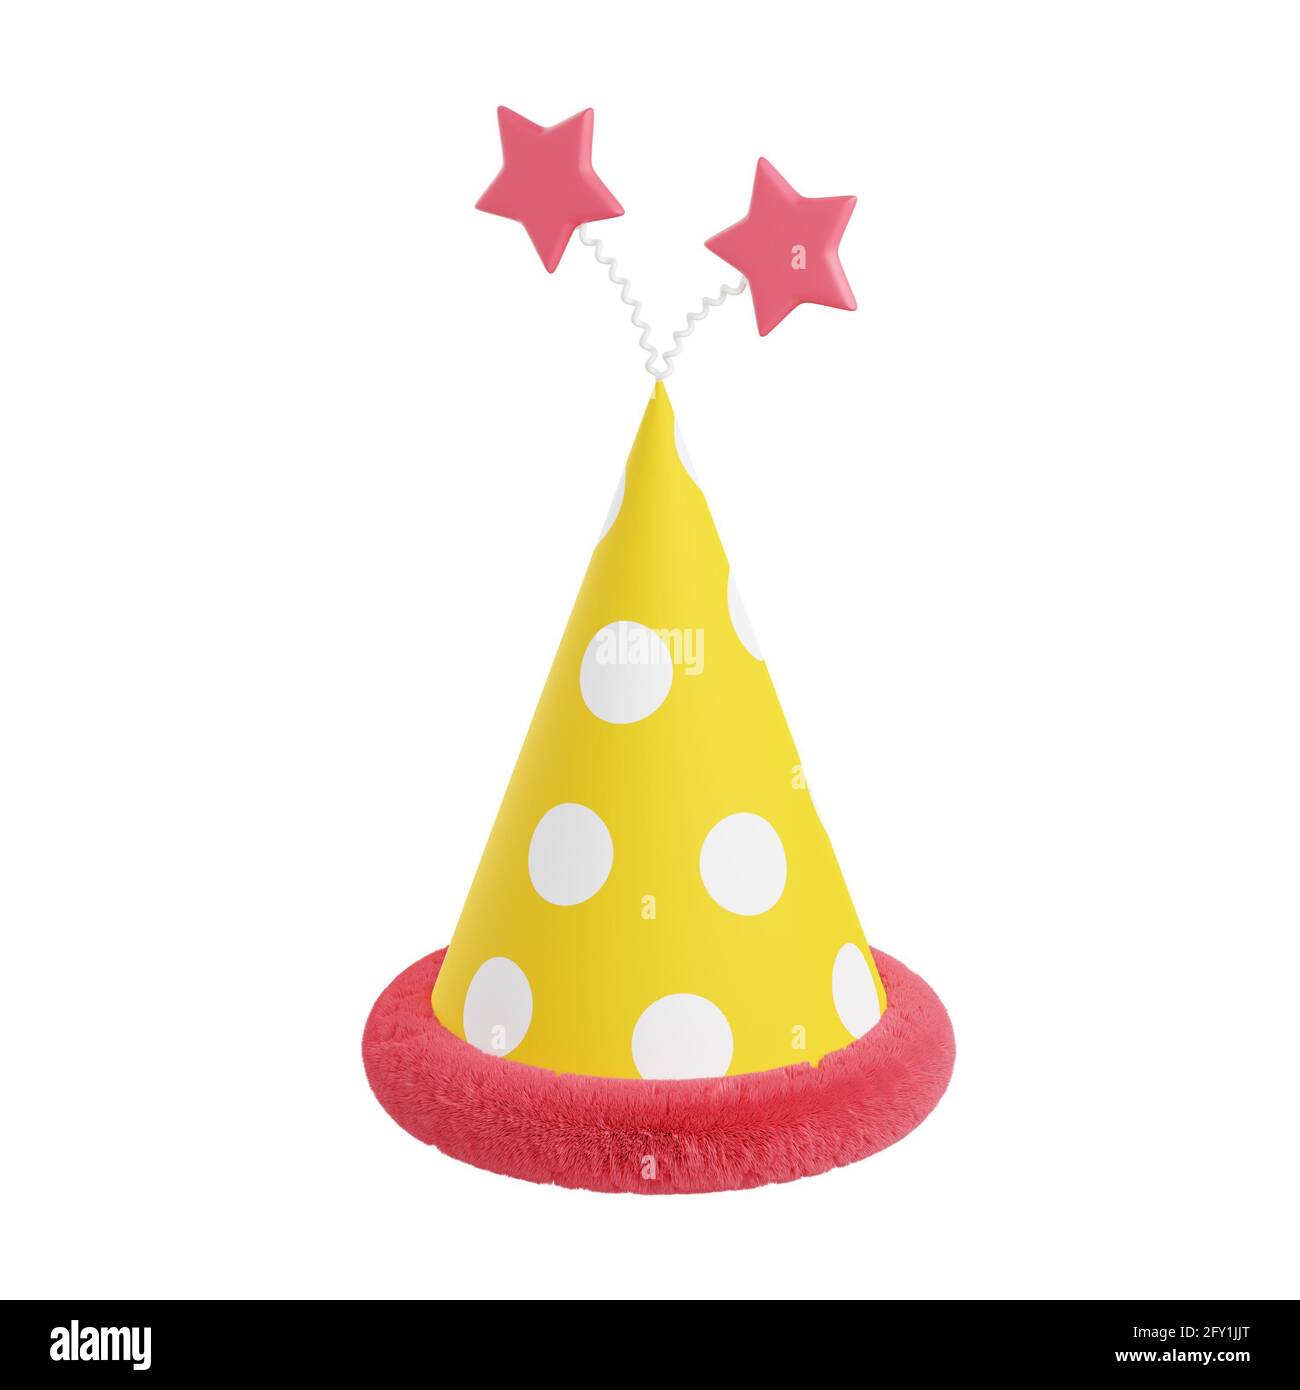 Illustrazione 3d Party Hat. Cono di carta giallo con puntini, decorazioni rosa e stelle per feste di compleanno o di festa Foto Stock